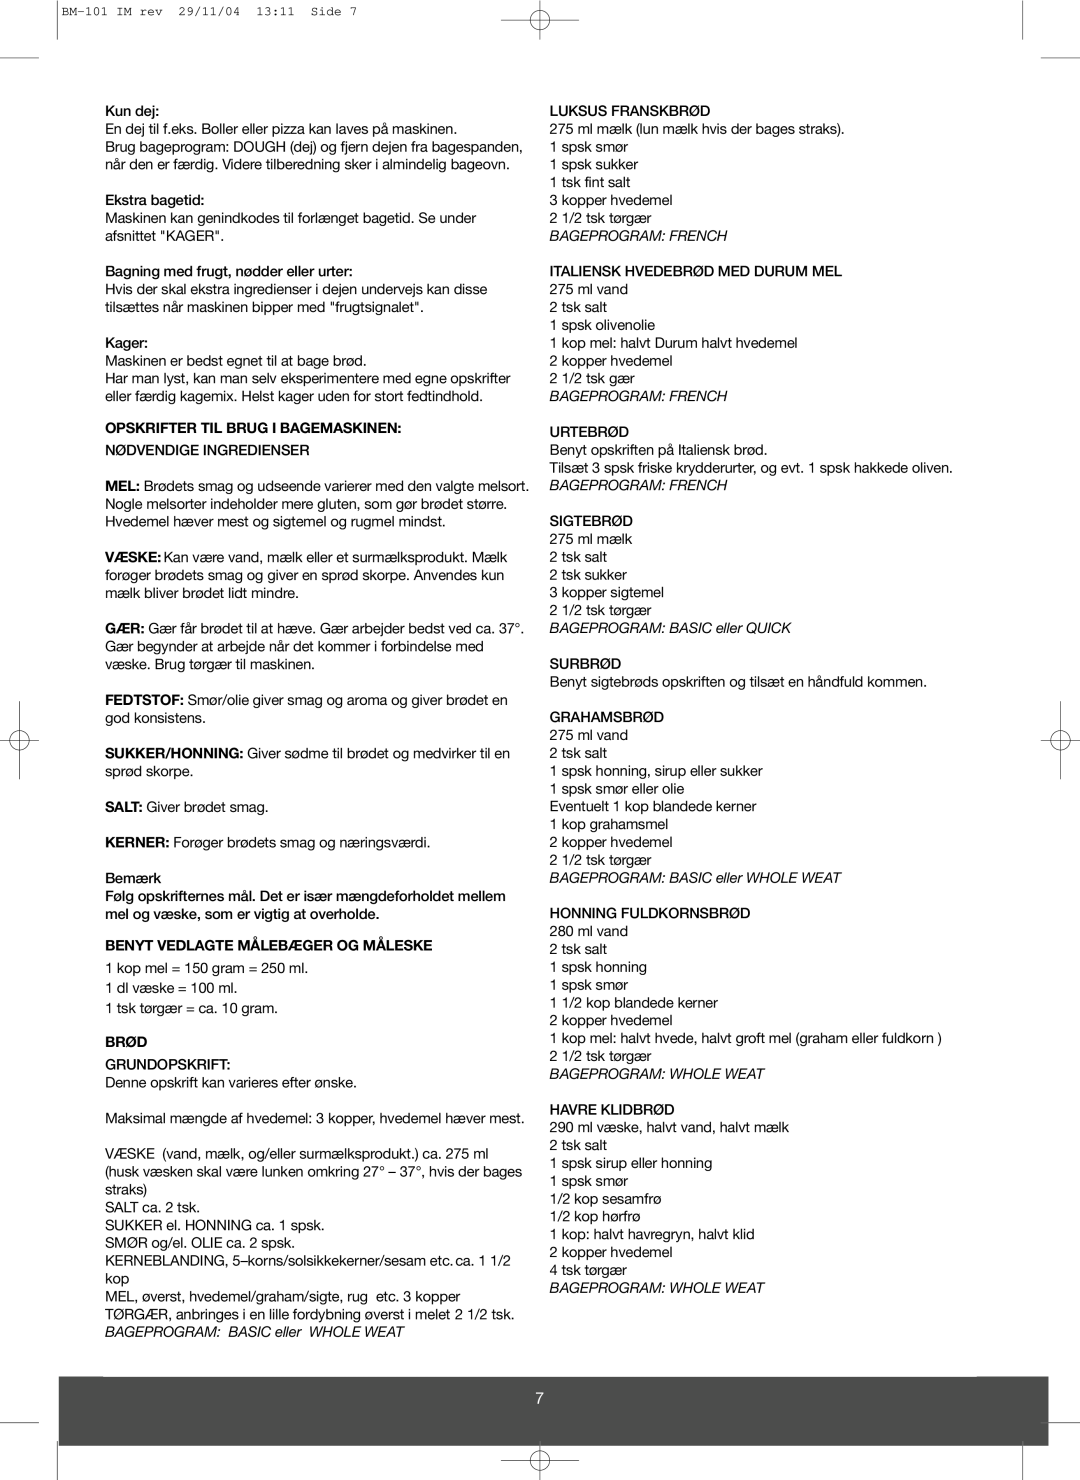 Melissa 643-032 manual Opskrifter Til Brug I Bagemaskinen, Benyt Vedlagte Målebæger Og Måleske, Brød, Bageprogram French 